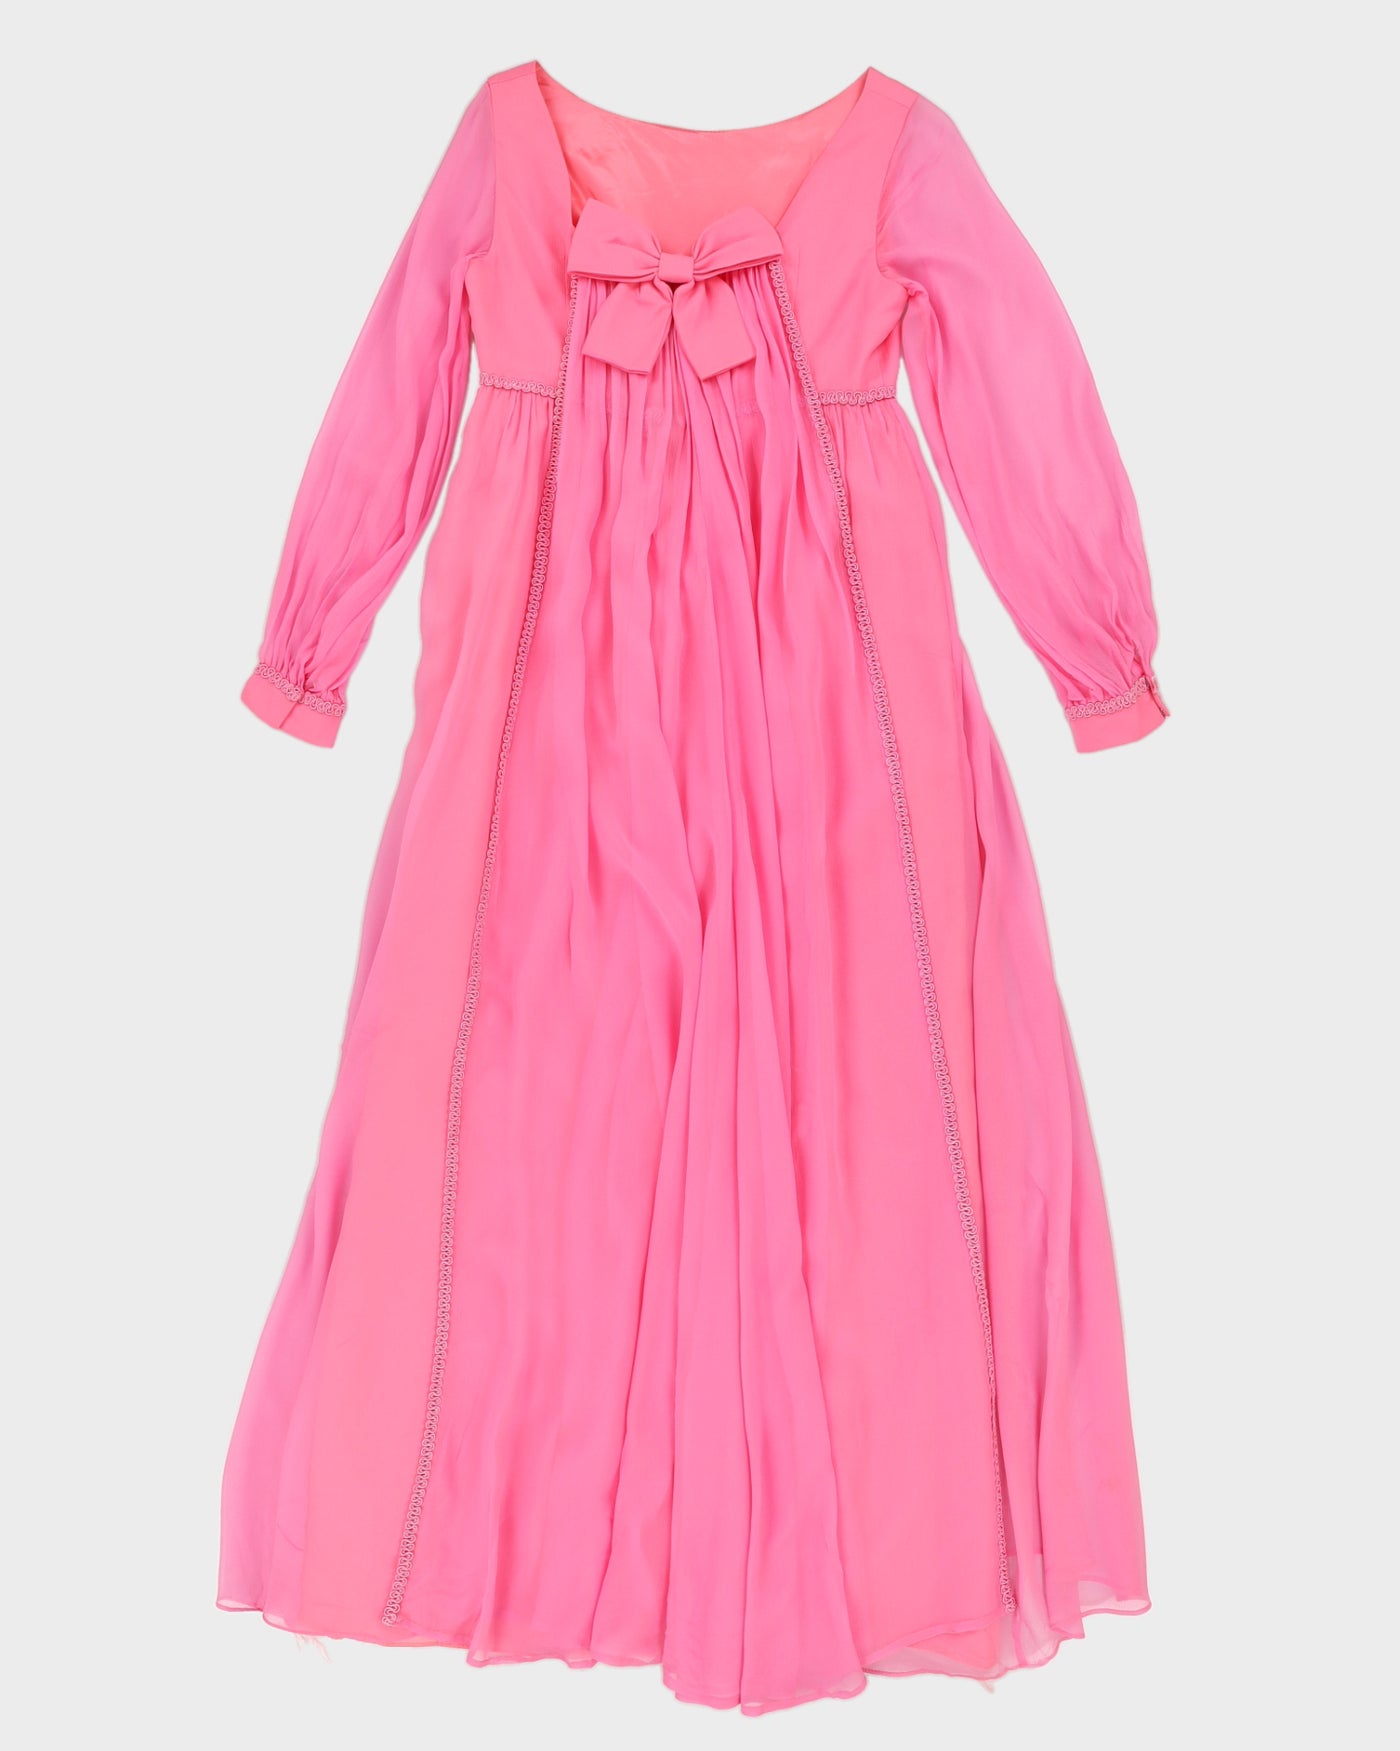 Vintage 1970s Pink Cocktail Dress - S